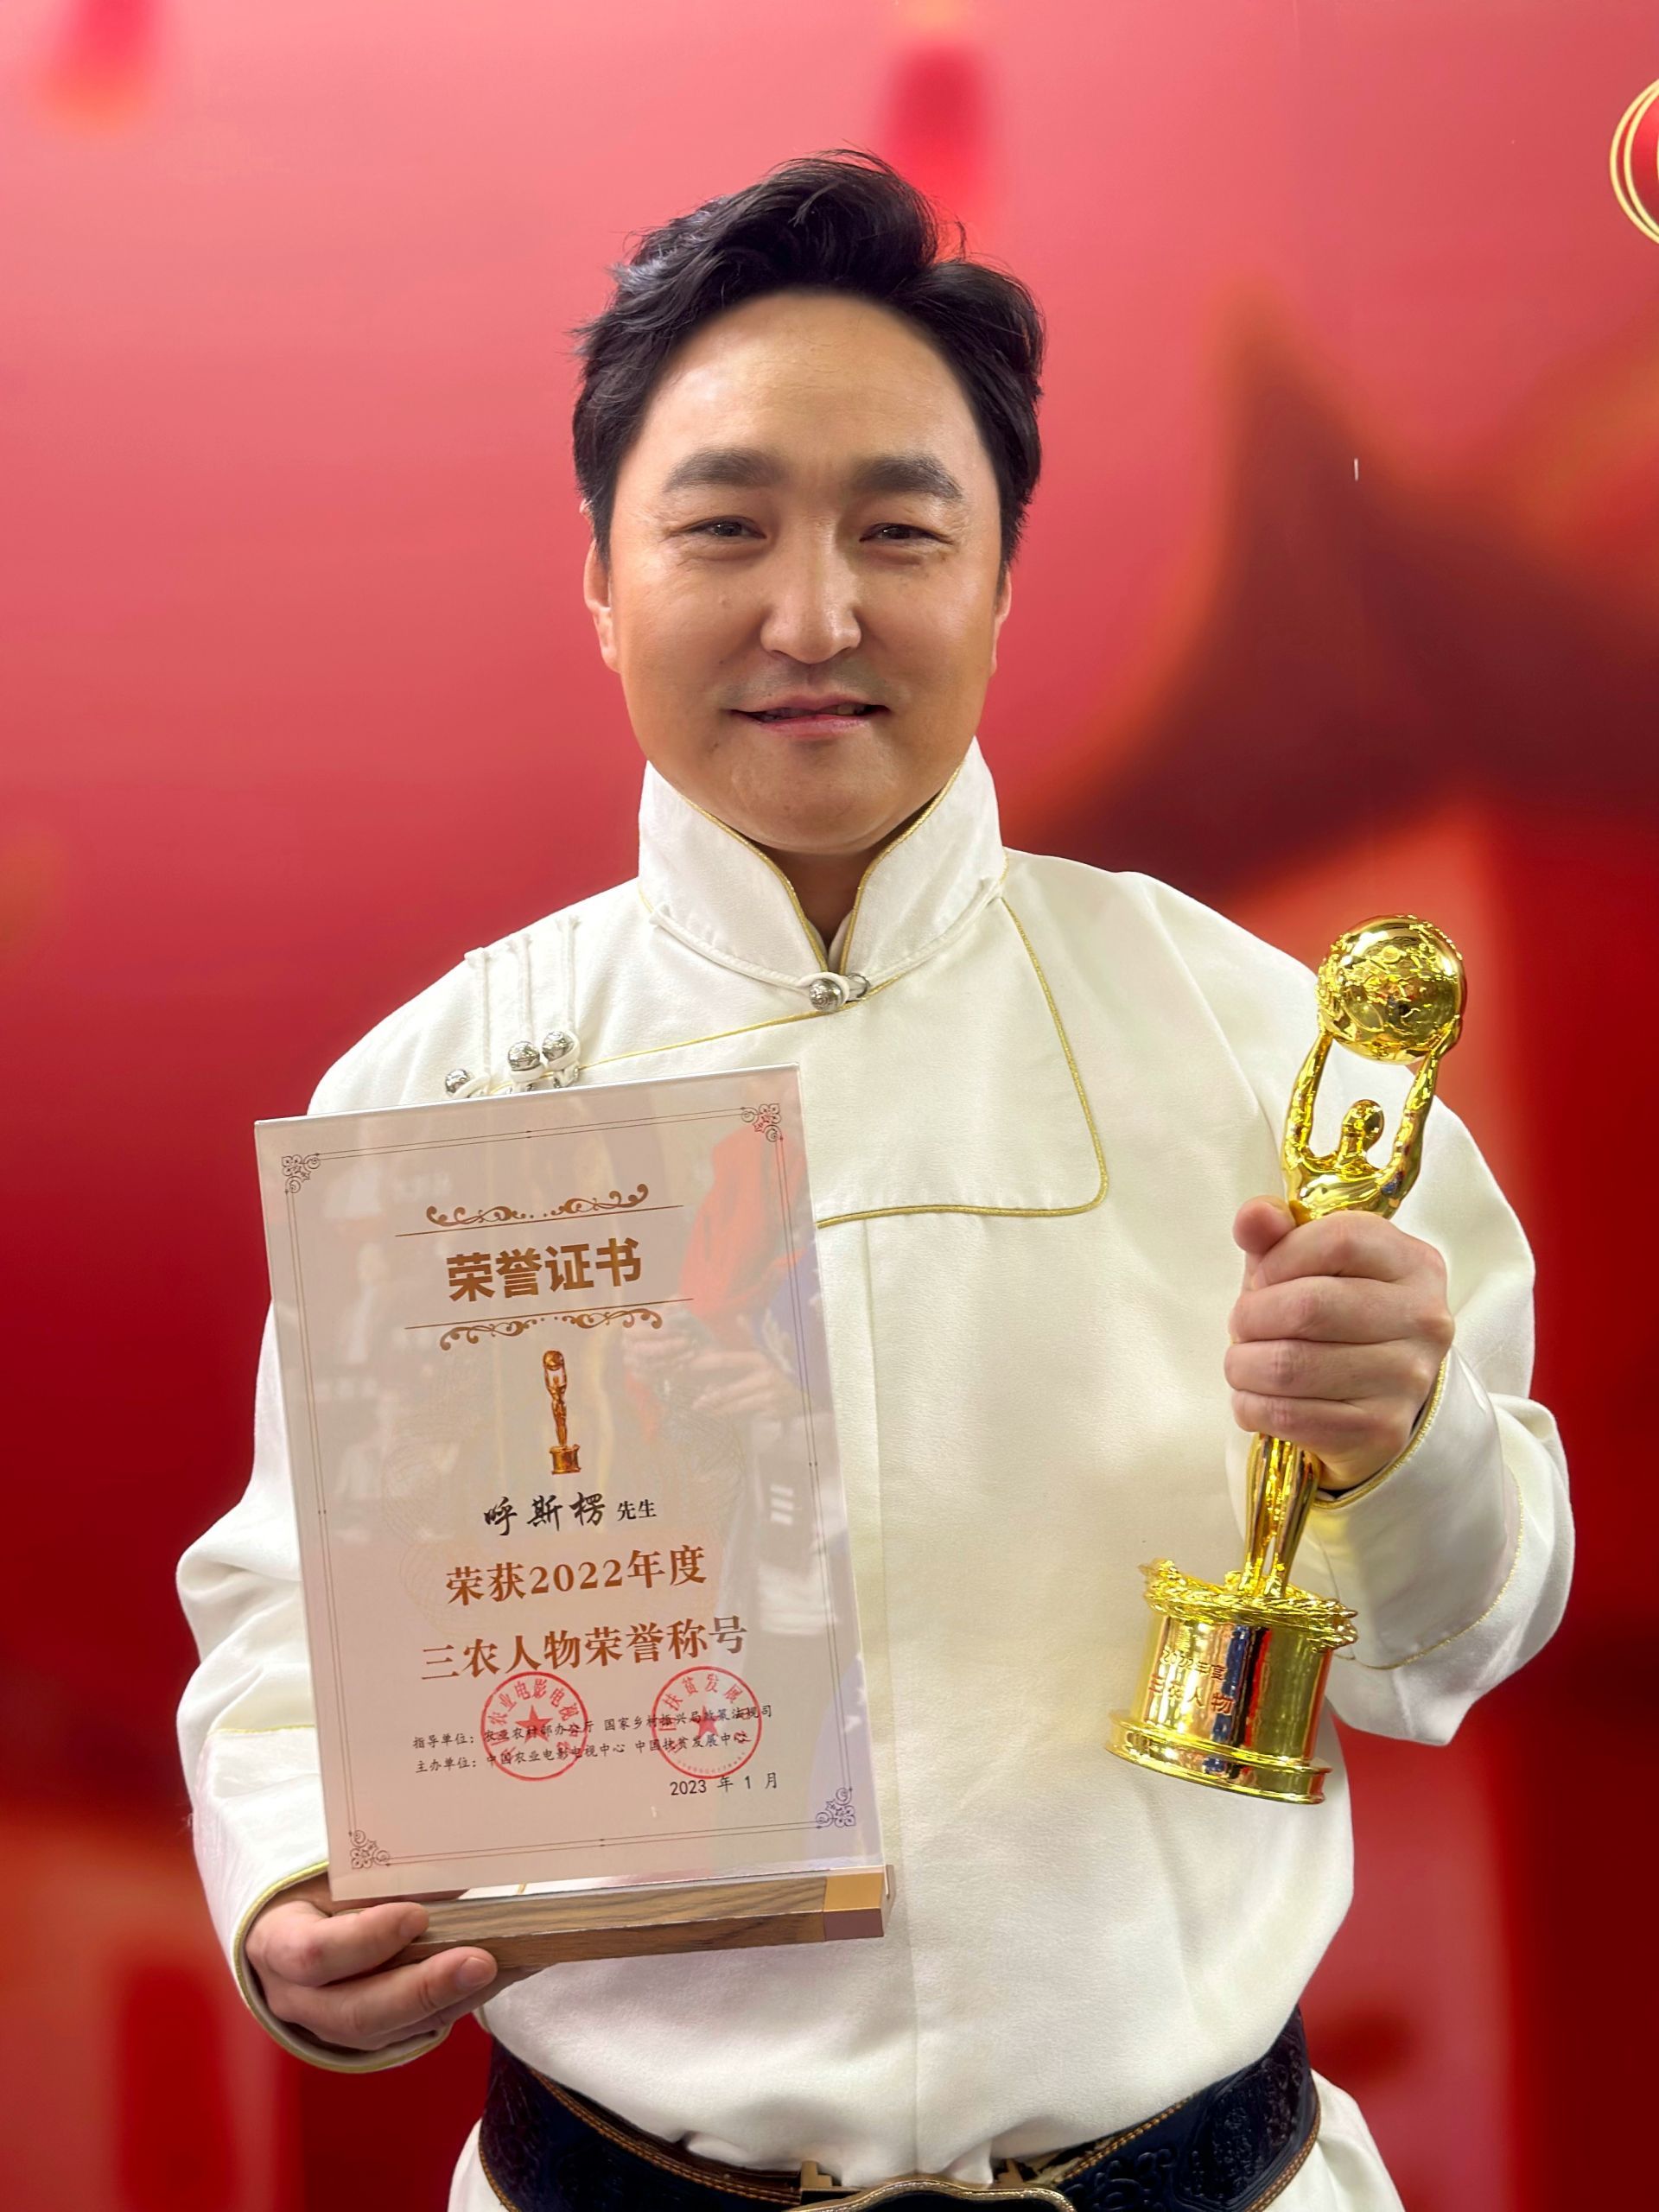 内蒙古青年歌唱家呼斯楞荣获2022年度三农人物称号